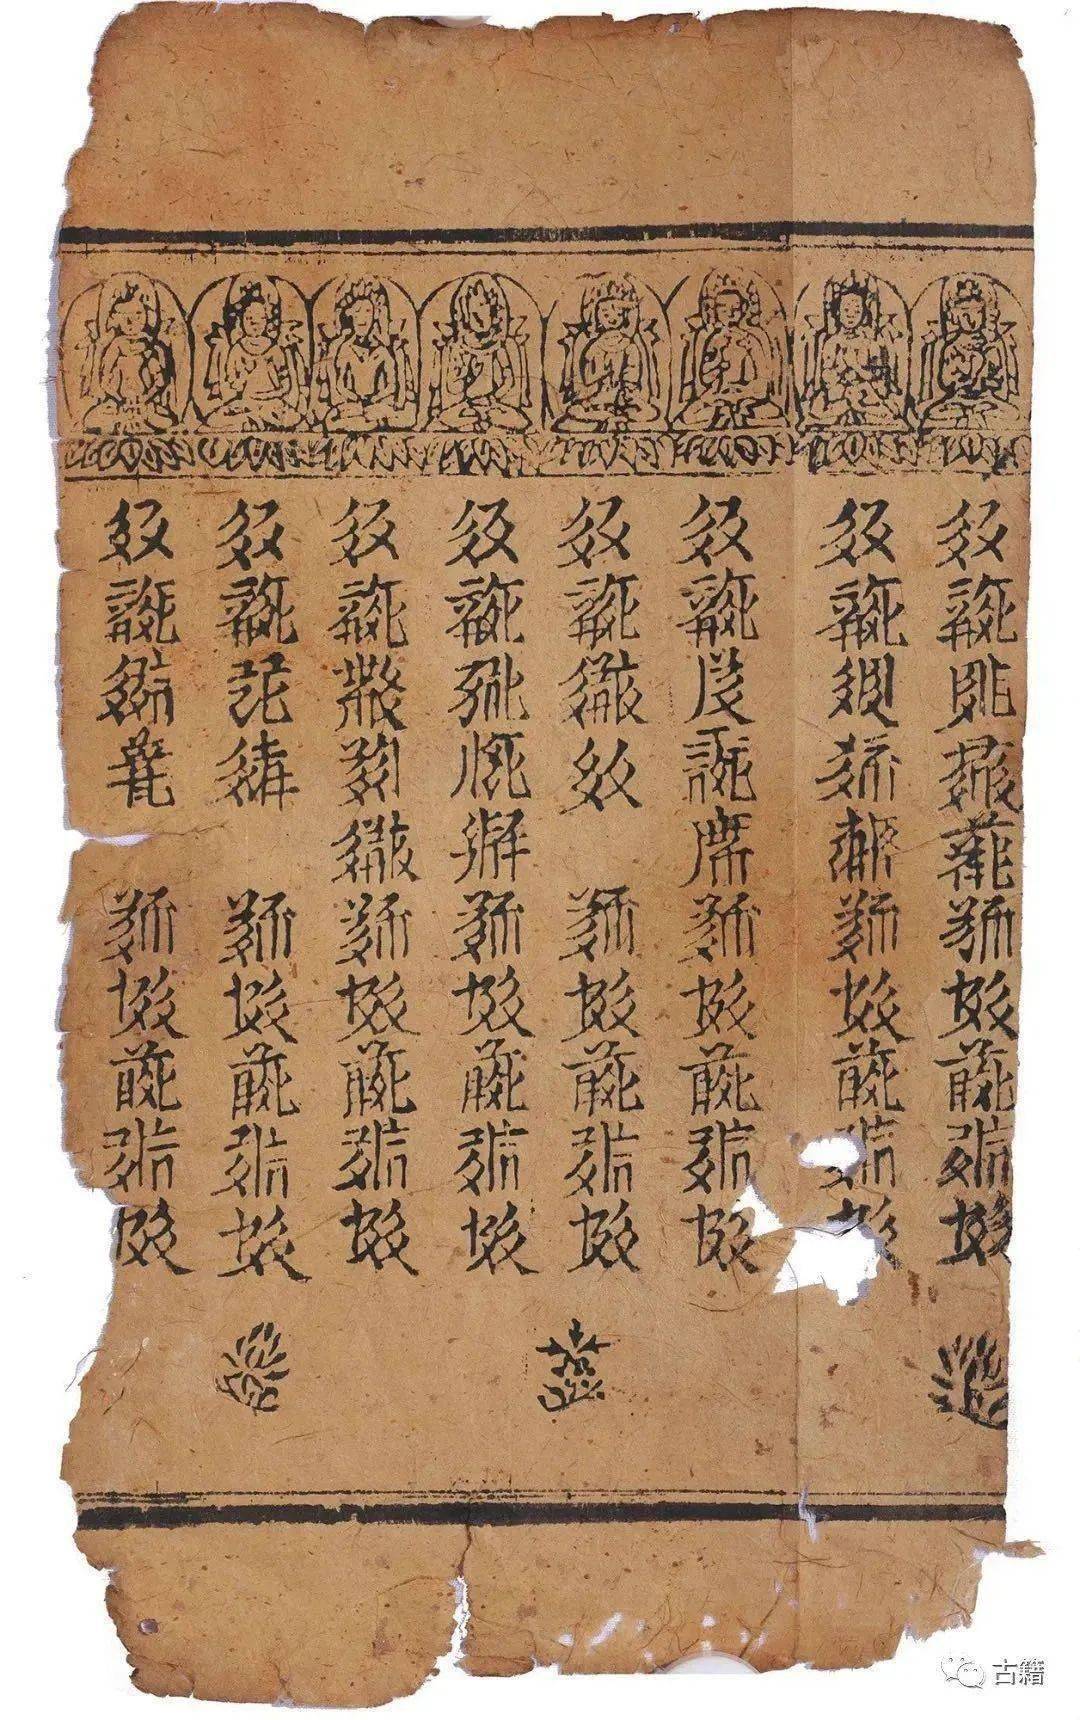 历史散叶曾经辉煌过的中国古老文字西夏文